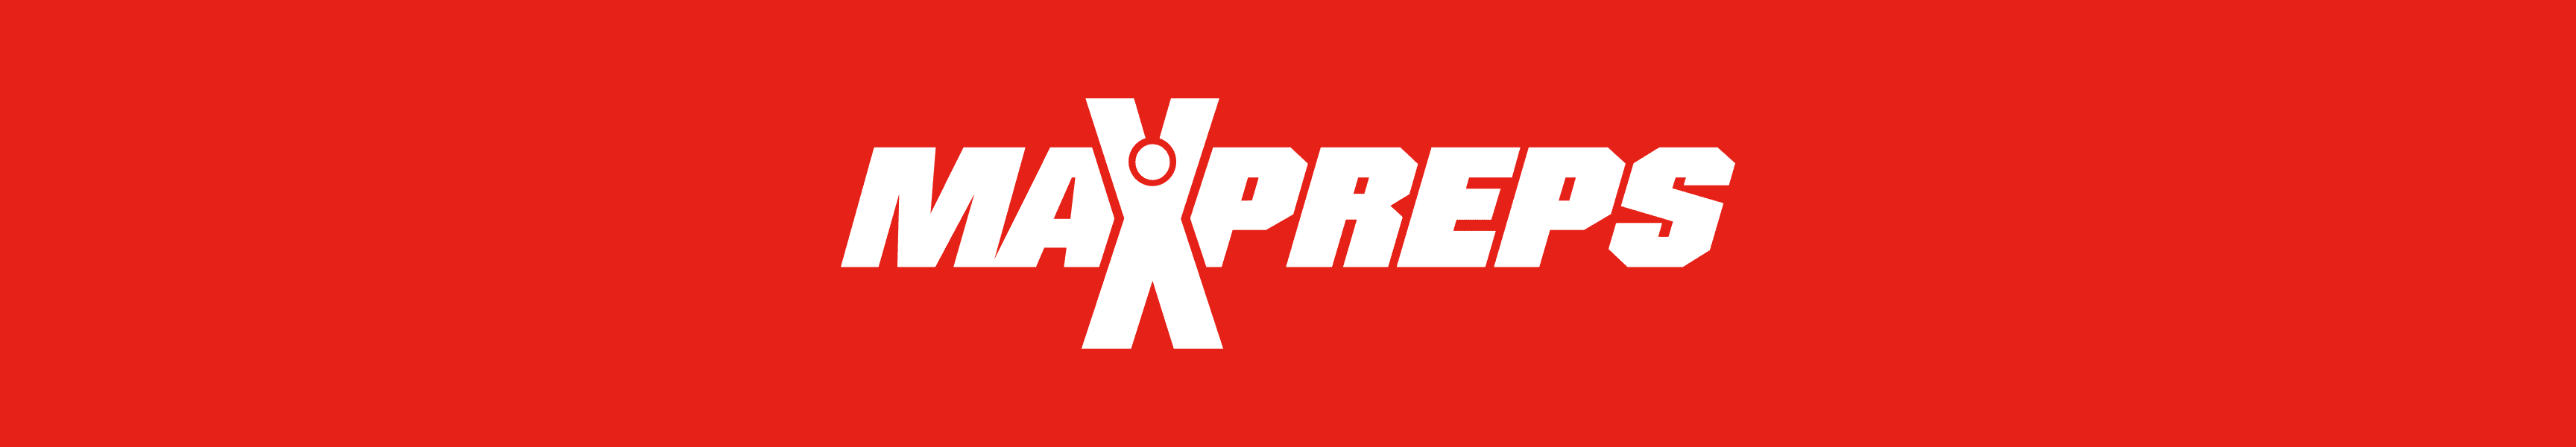 MaxPreps